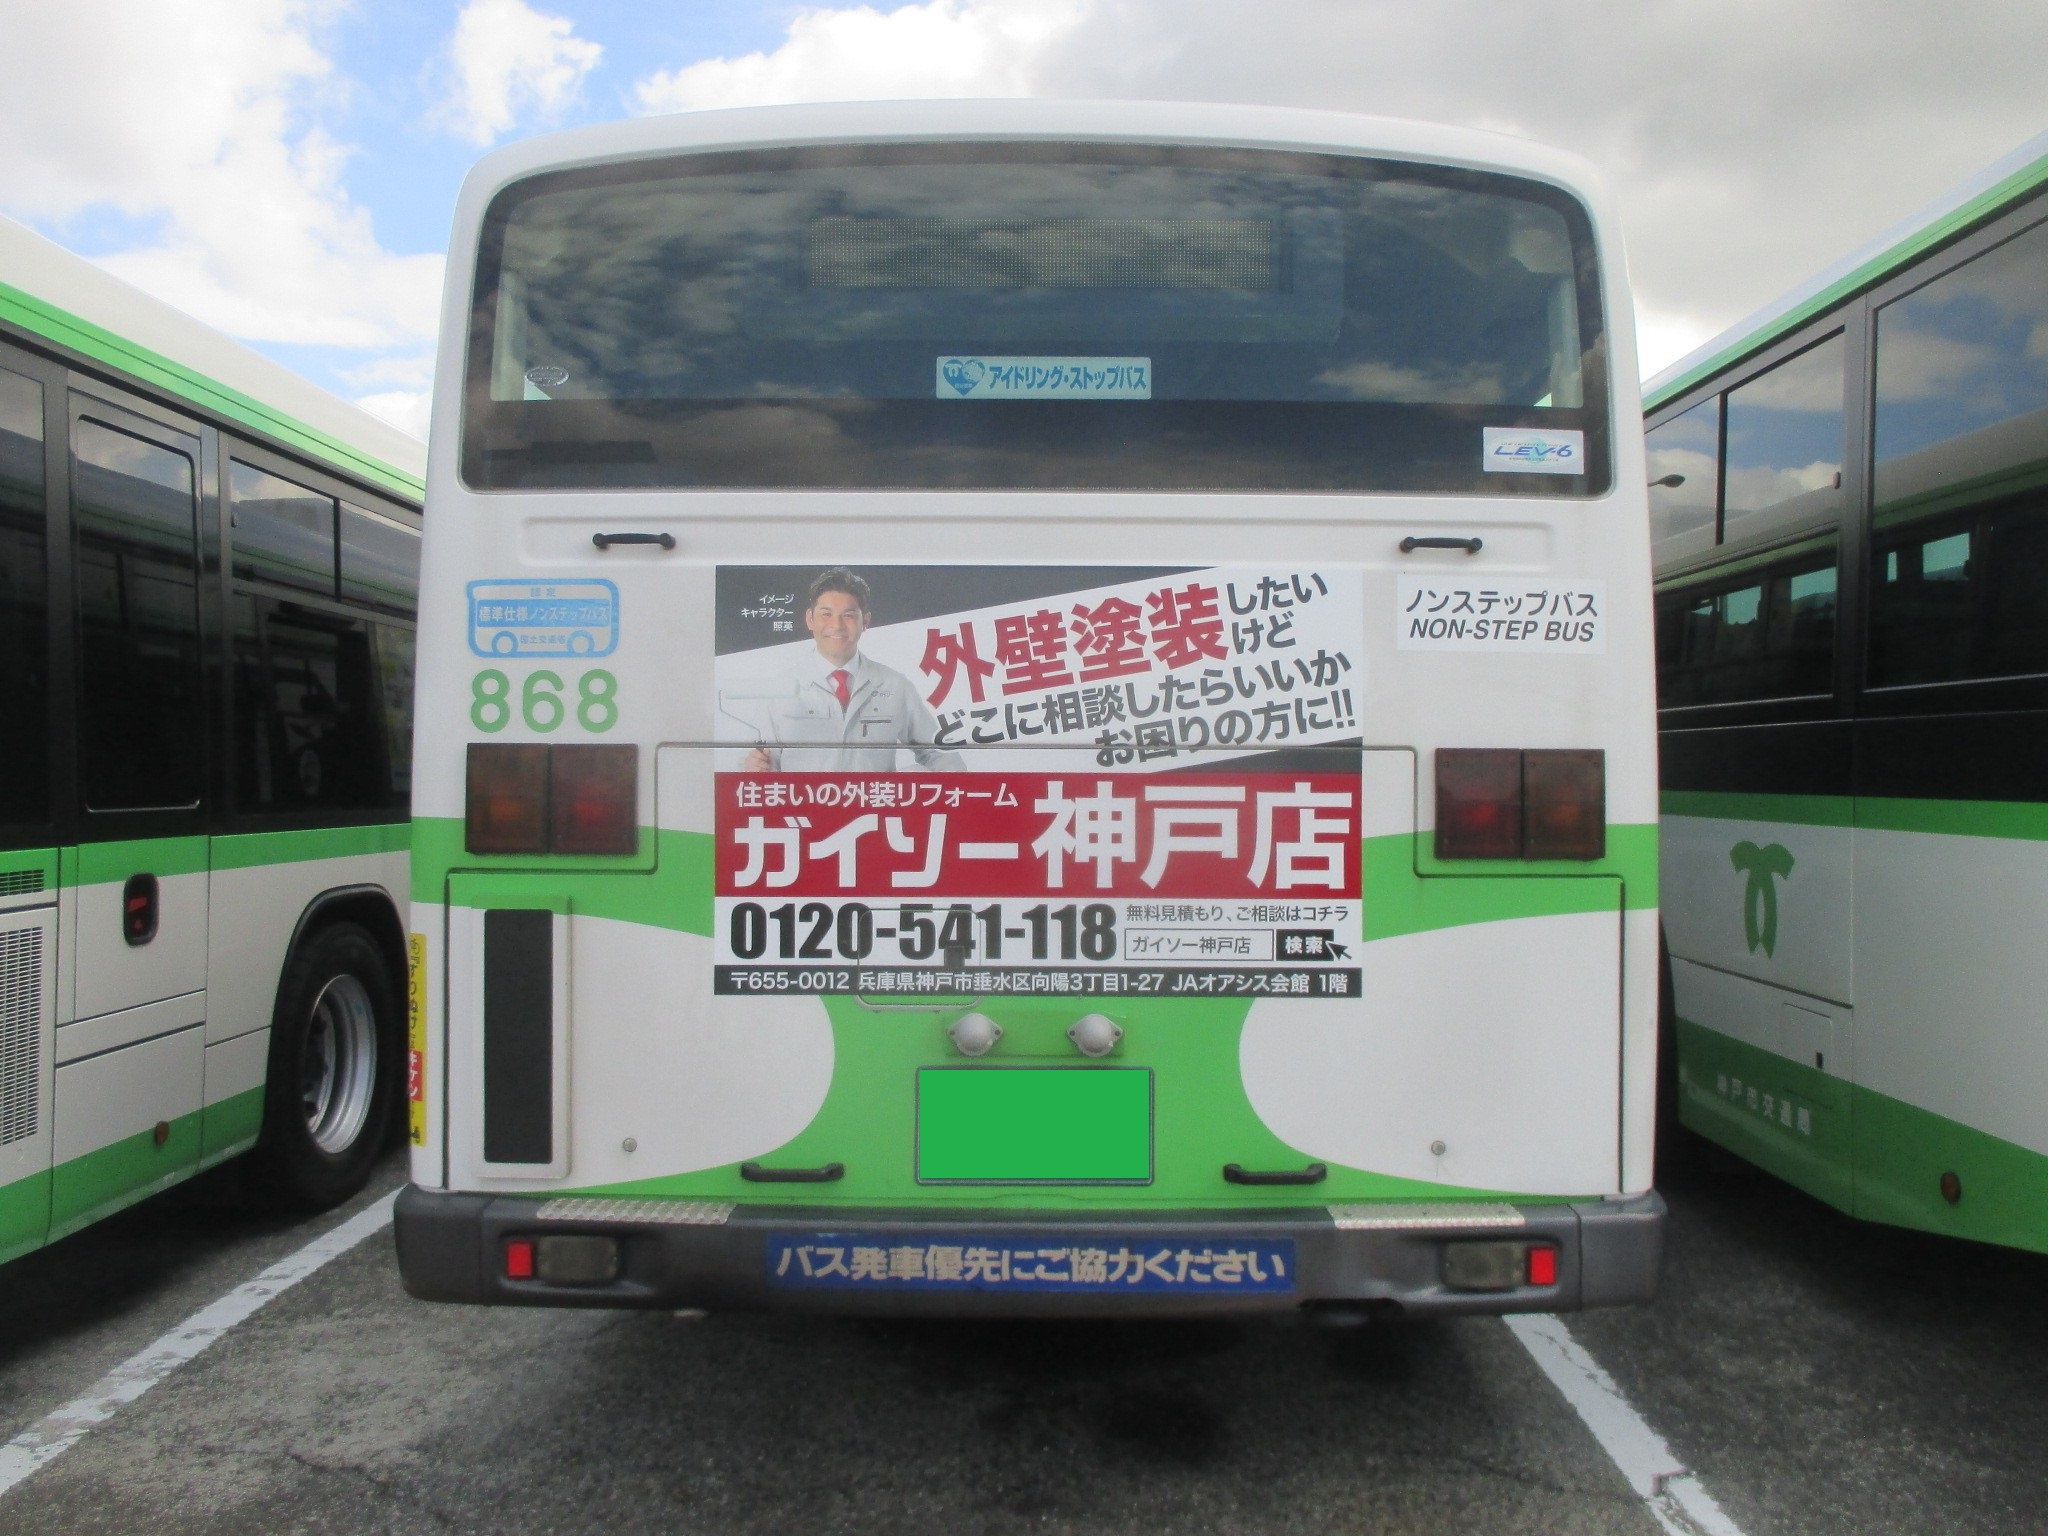 須磨区を中心に運行しているガイソー神戸店の広告が掲載されたバスの様子。